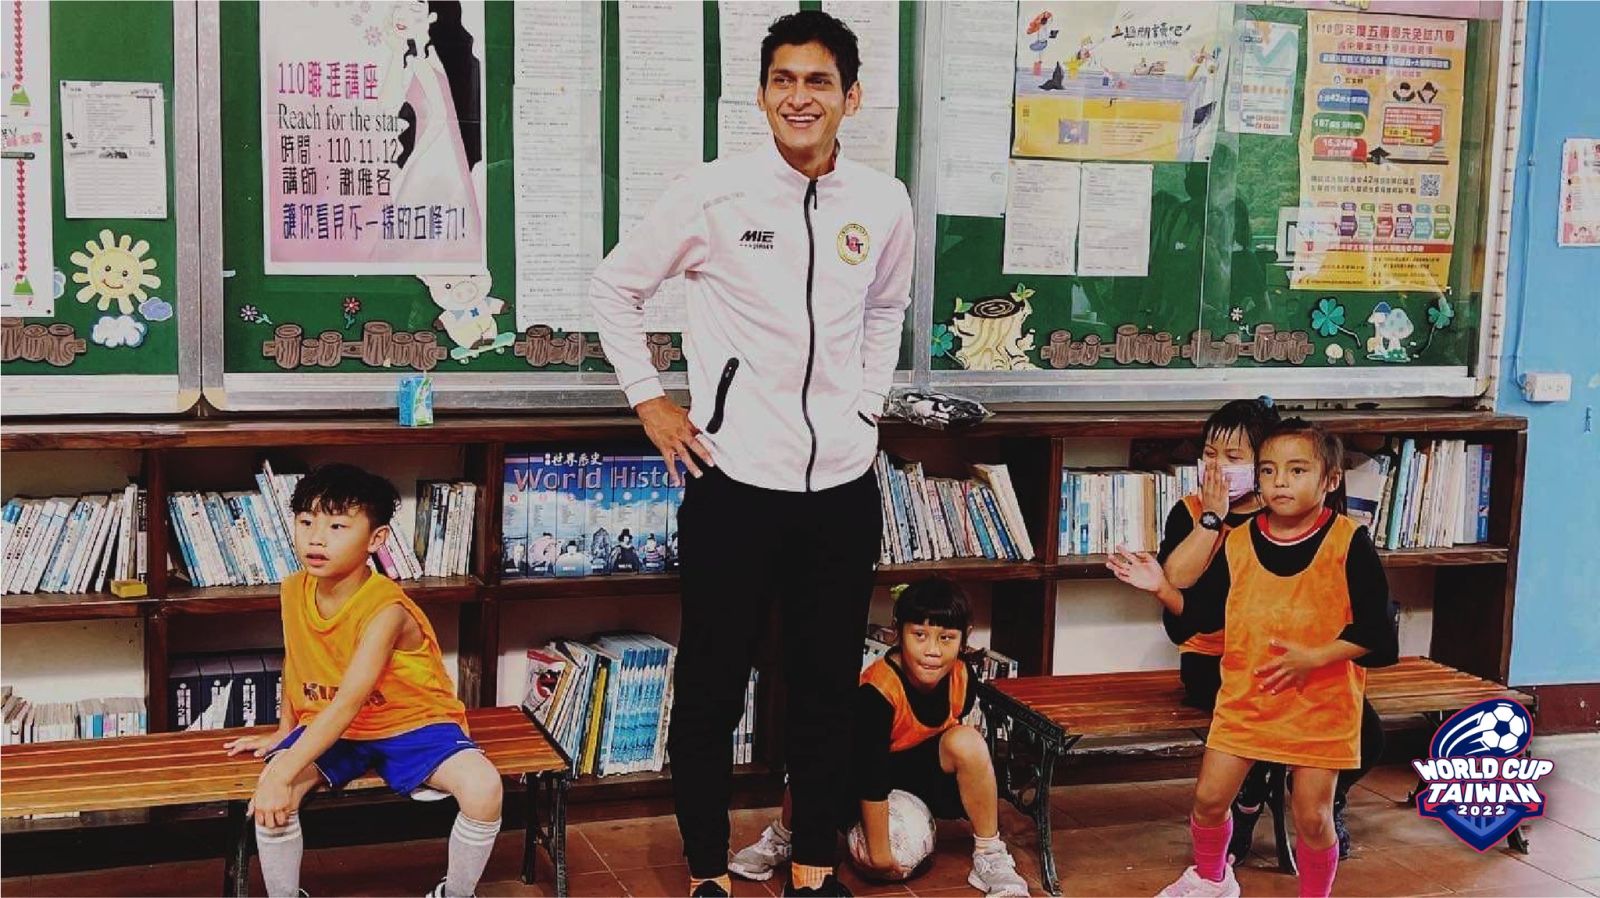 宏都拉斯男子隊長安阿爾格達赴偏鄉原住民國小教球。翻攝World Cup Taiwan臉書